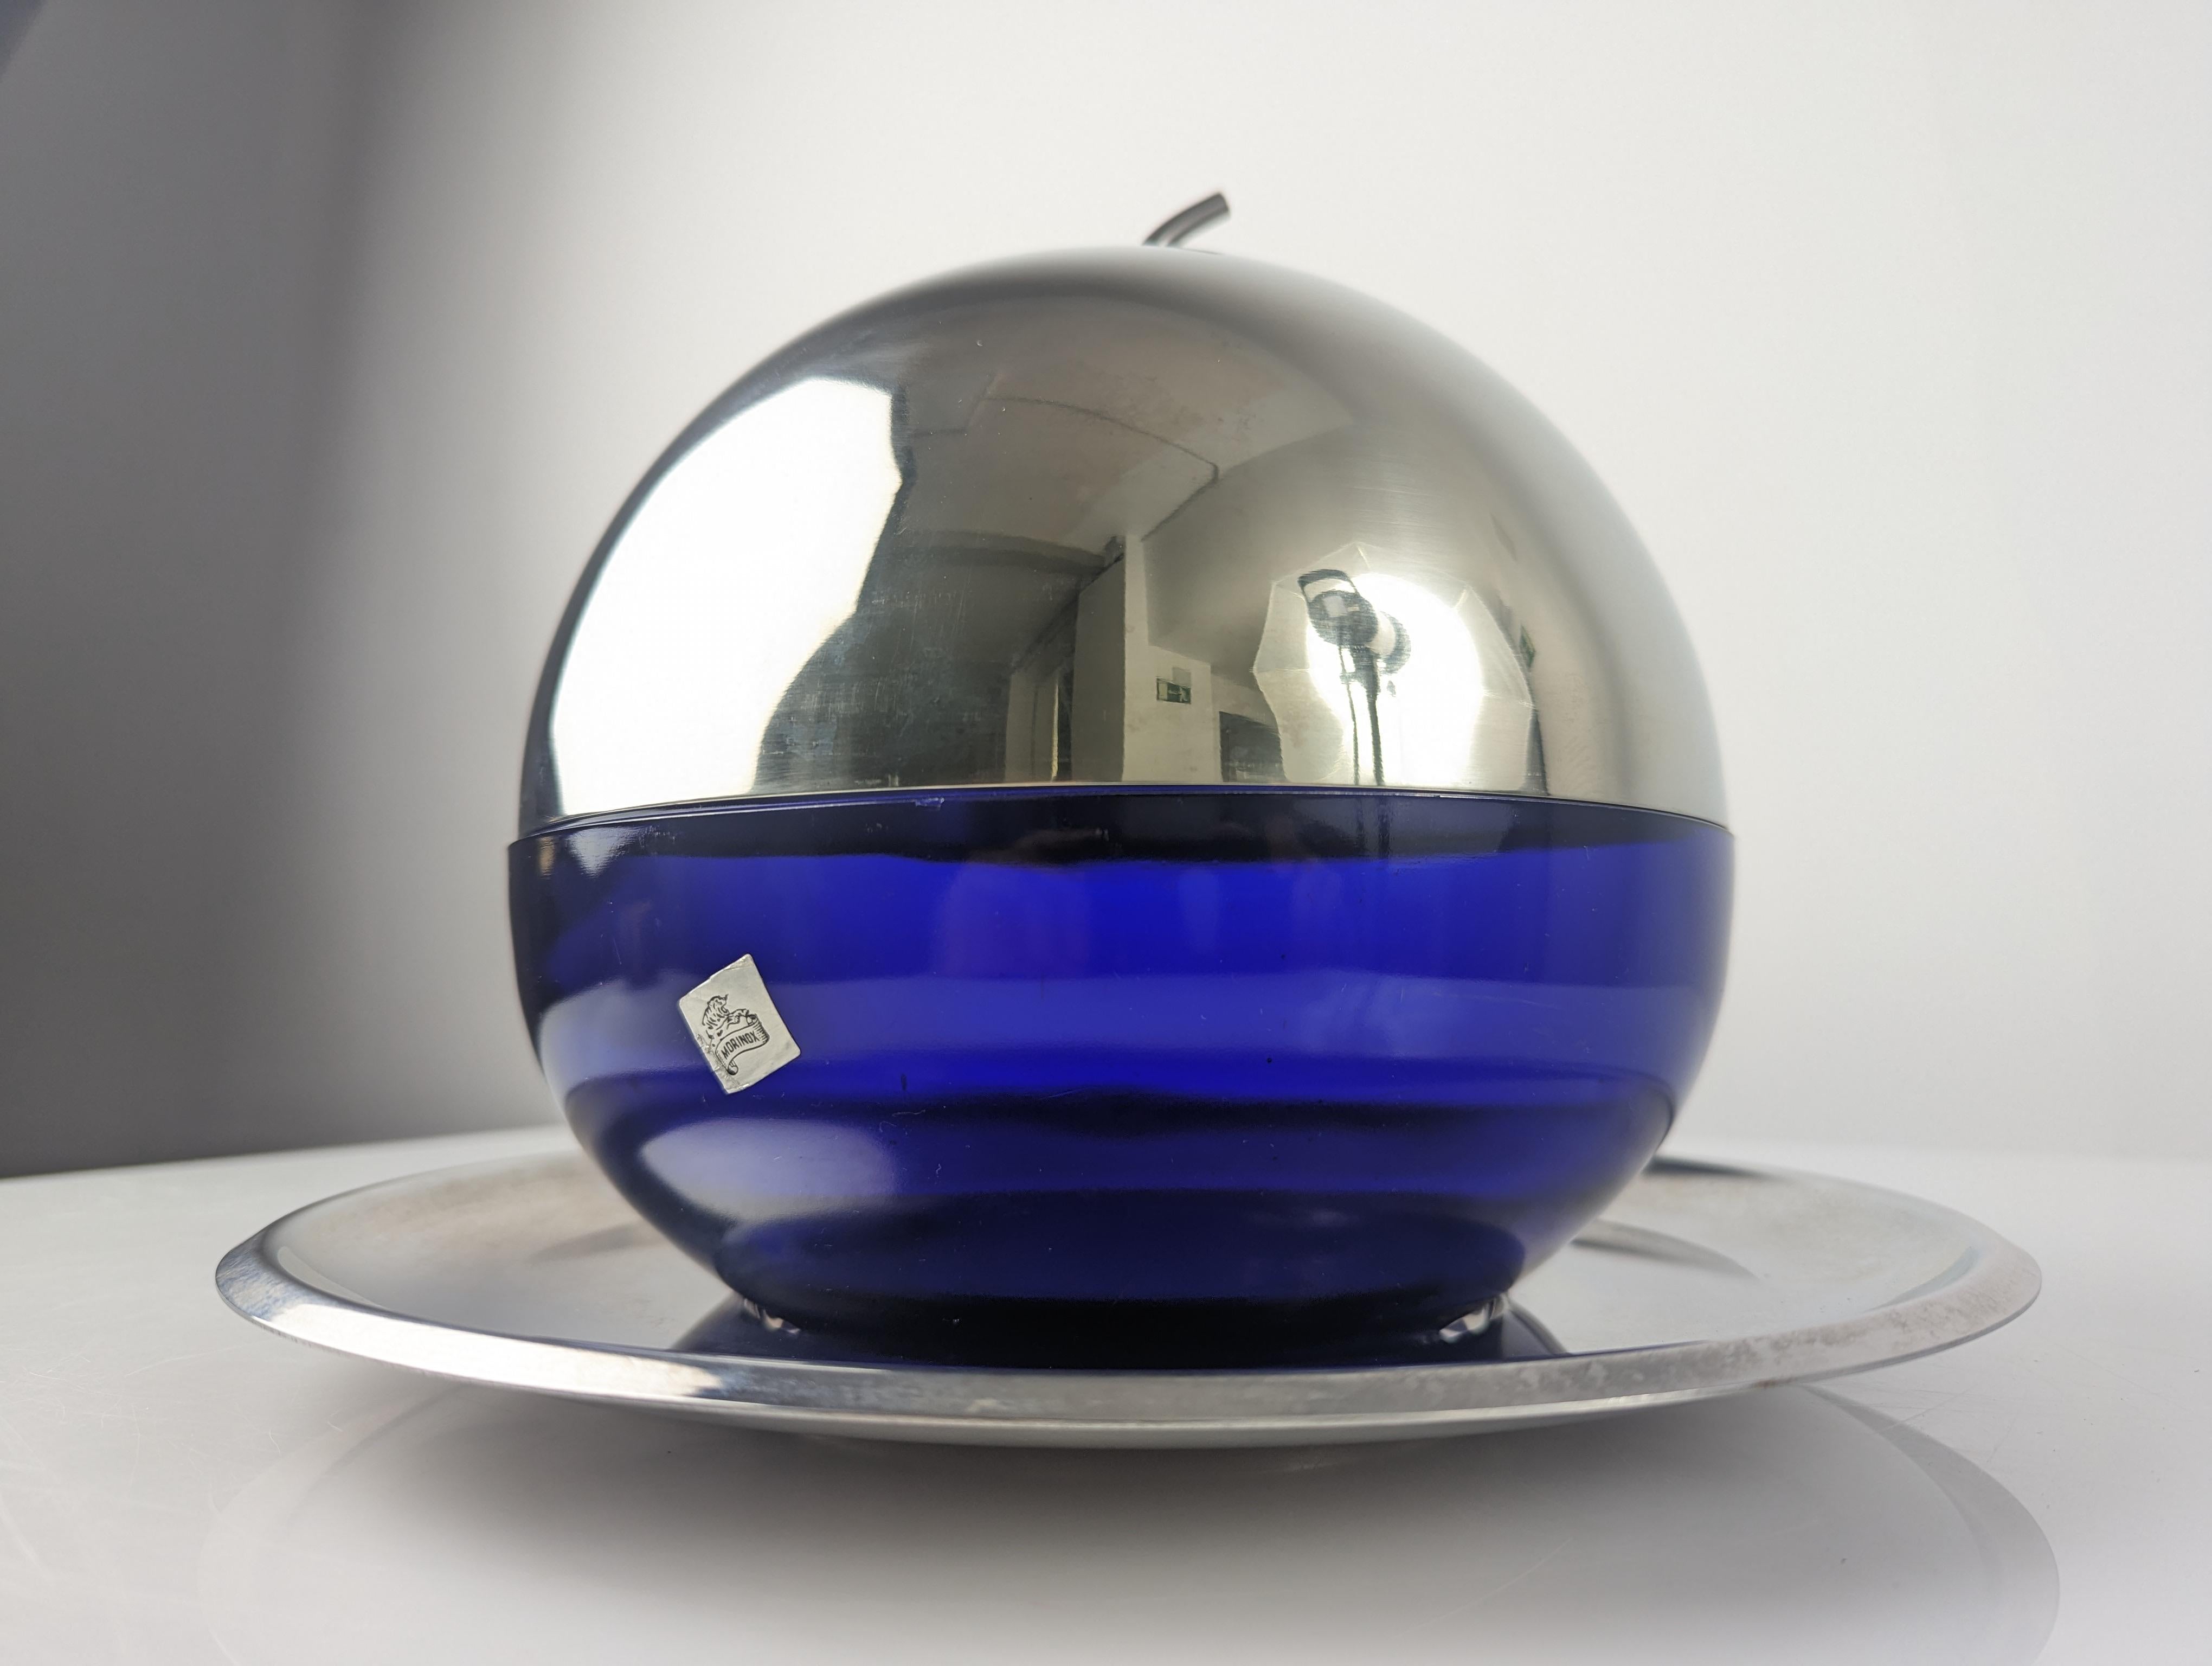 Eleganter Vintage-Eiskübel in Form eines Apfels aus dem 1930 gegründeten Haus Morinox. Hergestellt aus einer luxuriösen Kombination aus blauem Glas und poliertem Stahl.

Abmessungen: 21 cm x 21 cm - Teller: 29 cm.